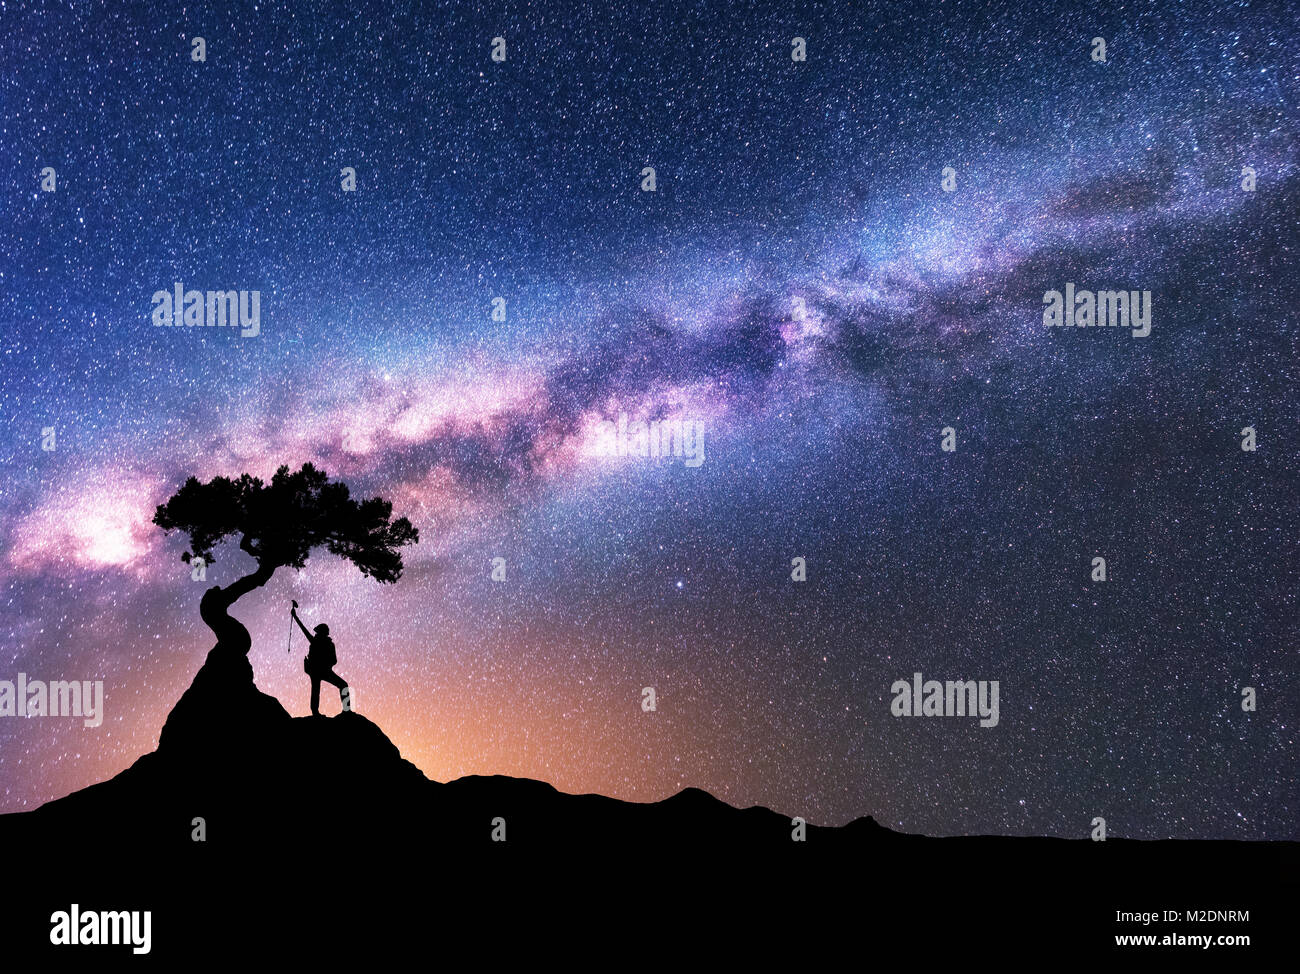 Vía Láctea y la silueta de la mujer bajo el árbol que crece a partir de la roca de la montaña durante la noche. Espacio con fondo de cielo estrellado, hermoso una galaxia Foto de stock